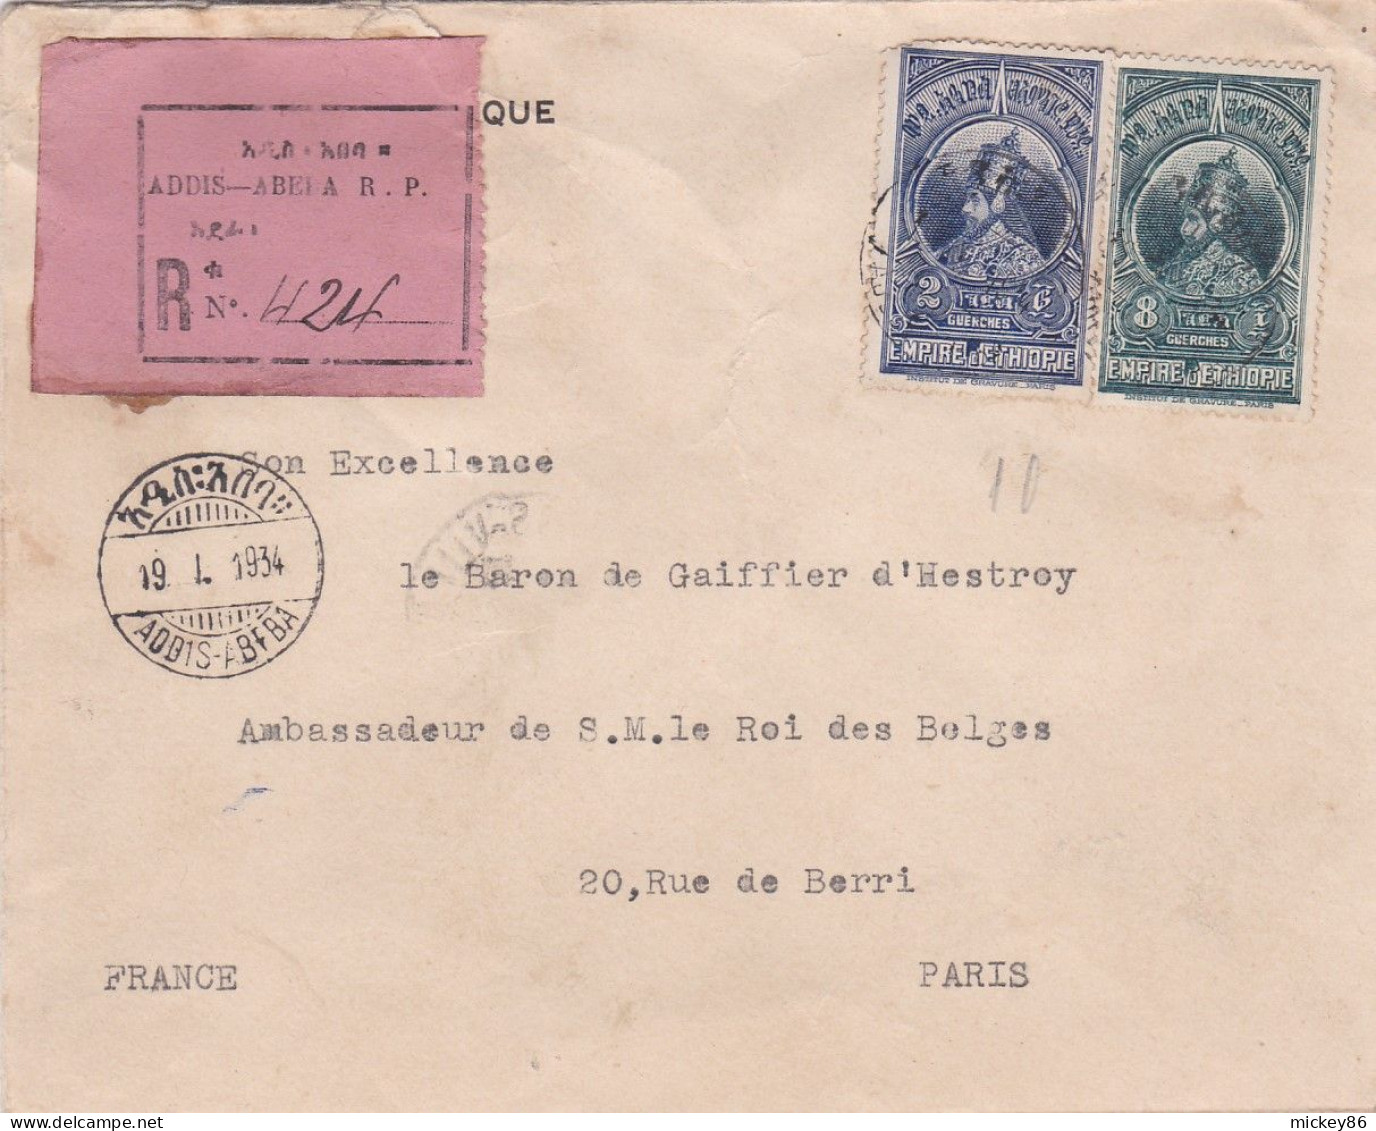 ETHIOPIE -1934 - Lettre Recommandée ADDIS-ABEBA  Pour PARIS (France )..beaux Timbres  Sur Lettre , Cachets - Etiopía